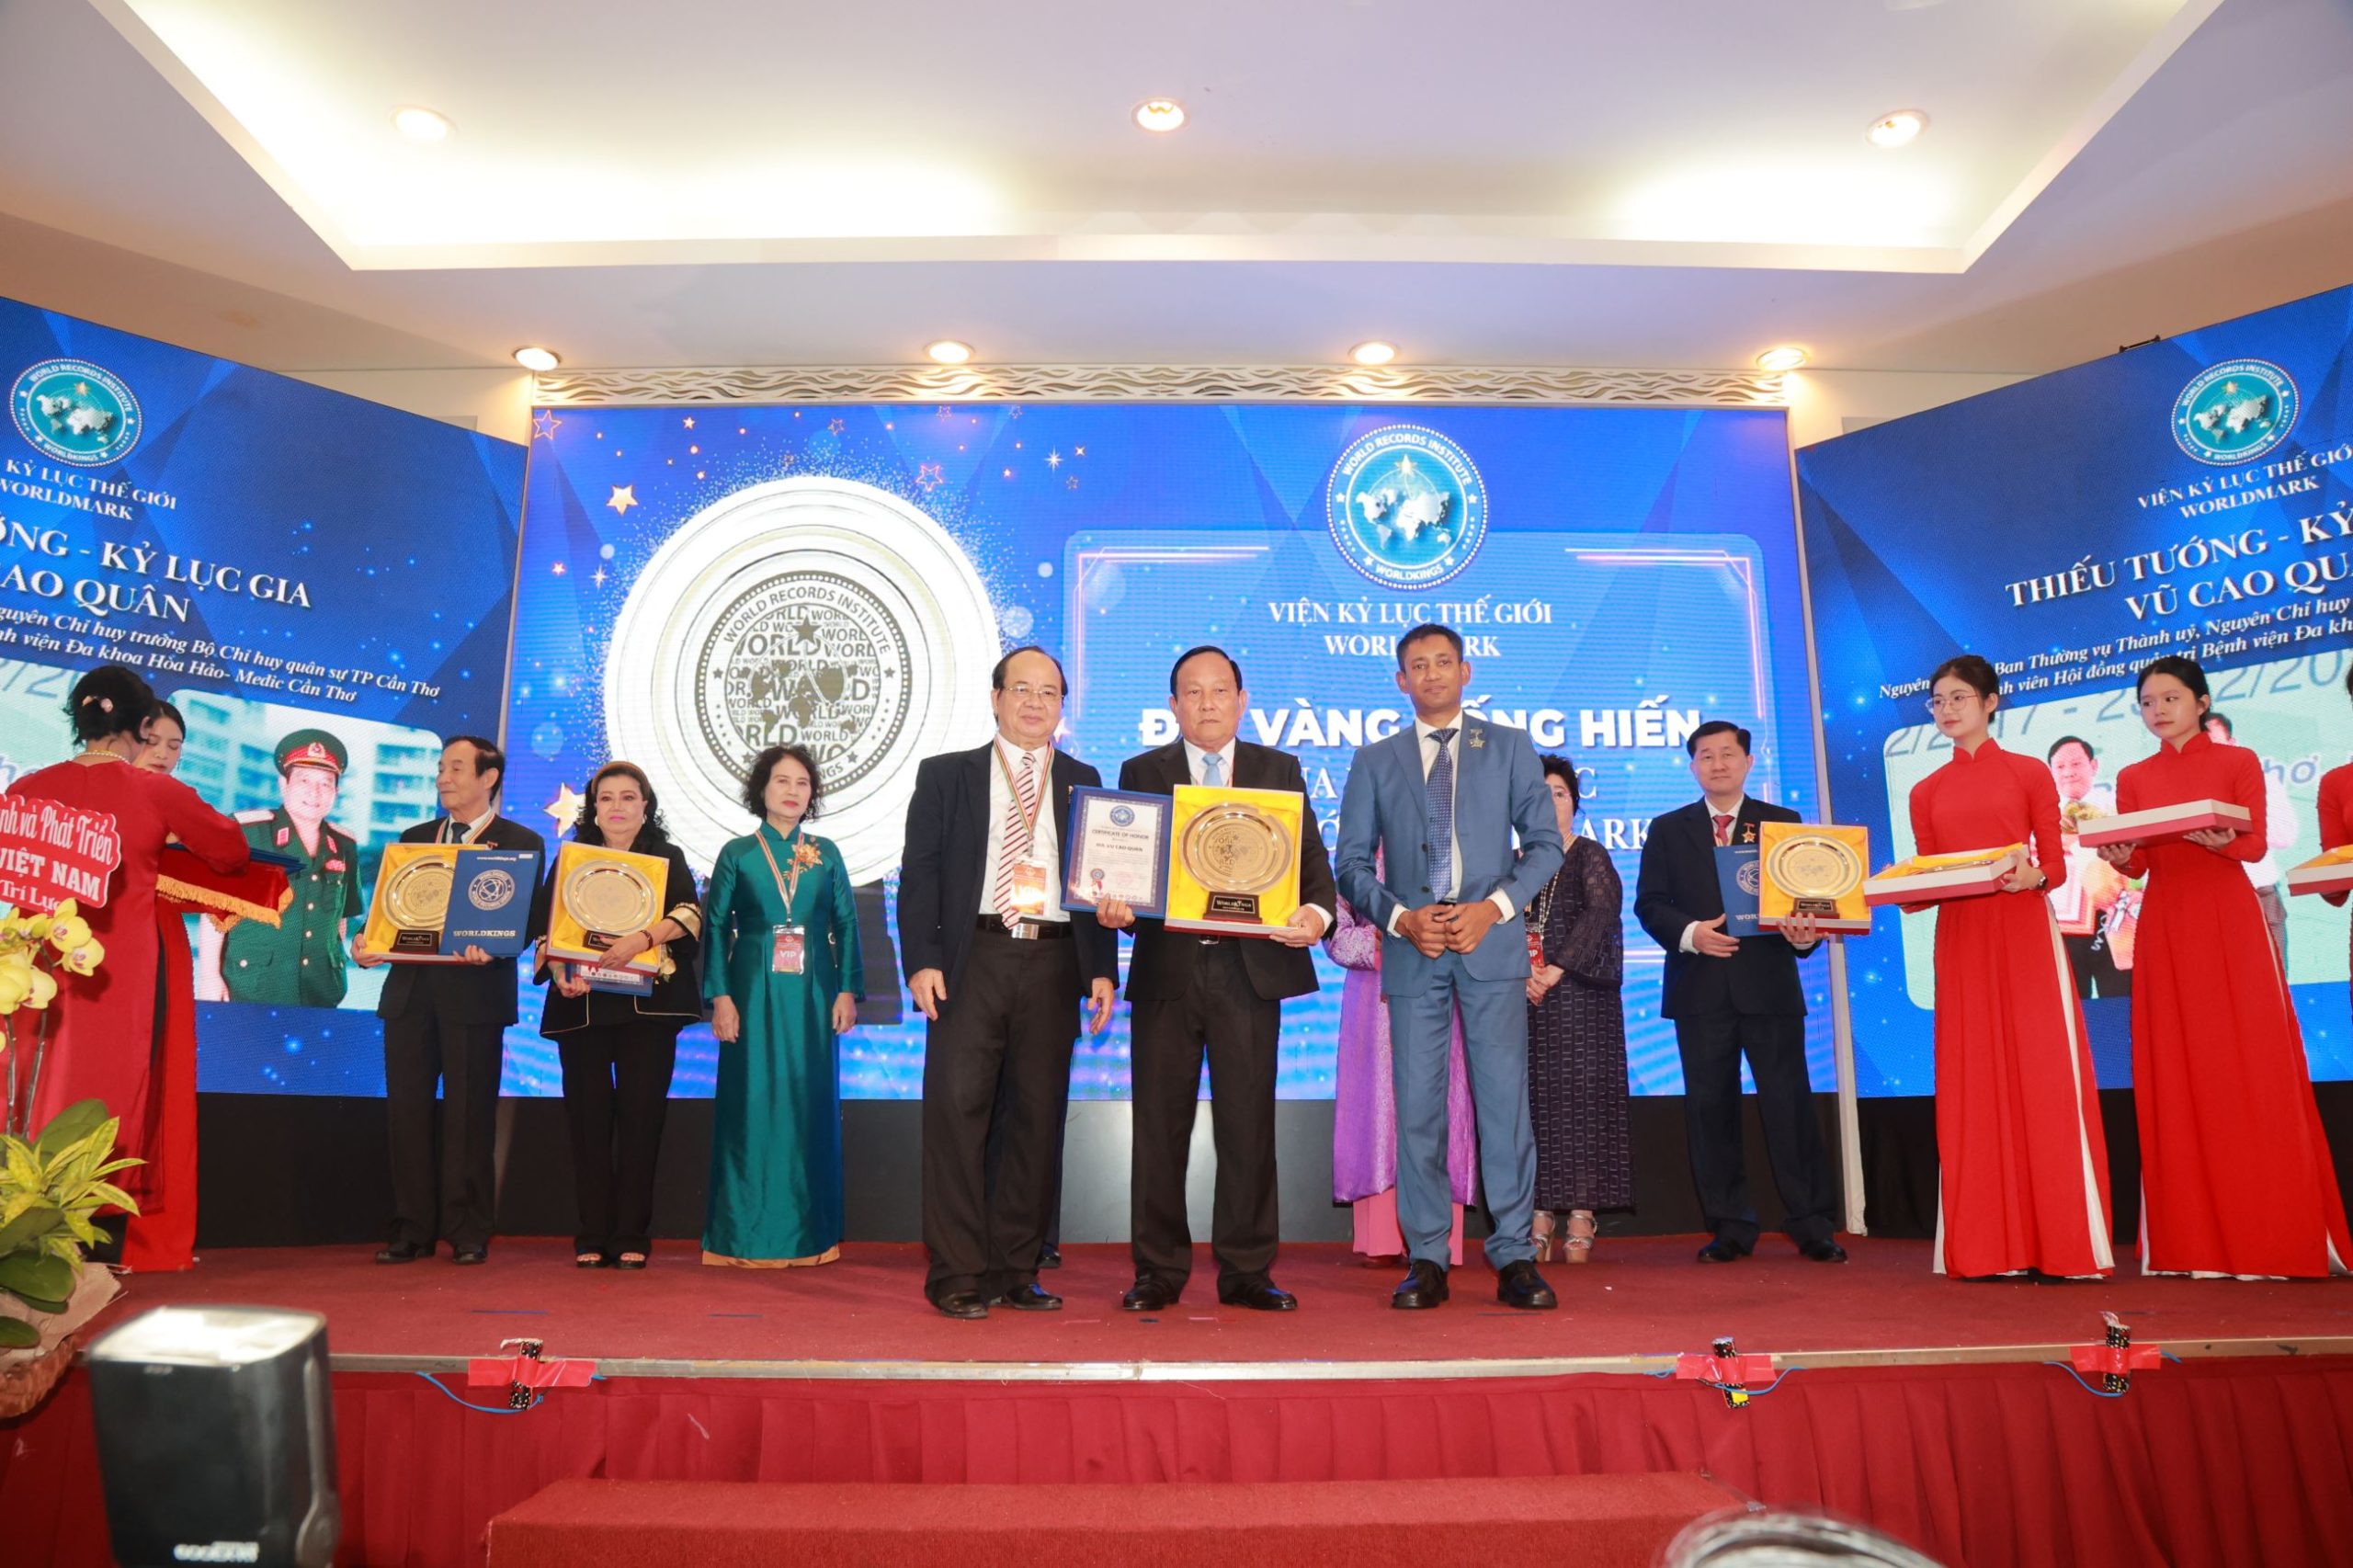 Tiến sĩ Biswaroop Roy Chowdhury và Giáo sư, Viện sĩ Hoàng Quang Thuận trao chứng nhận và Đĩa vàng Cống hiến đến Thiếu tướng, Kỷ lục gia Vũ Cao Quân. 